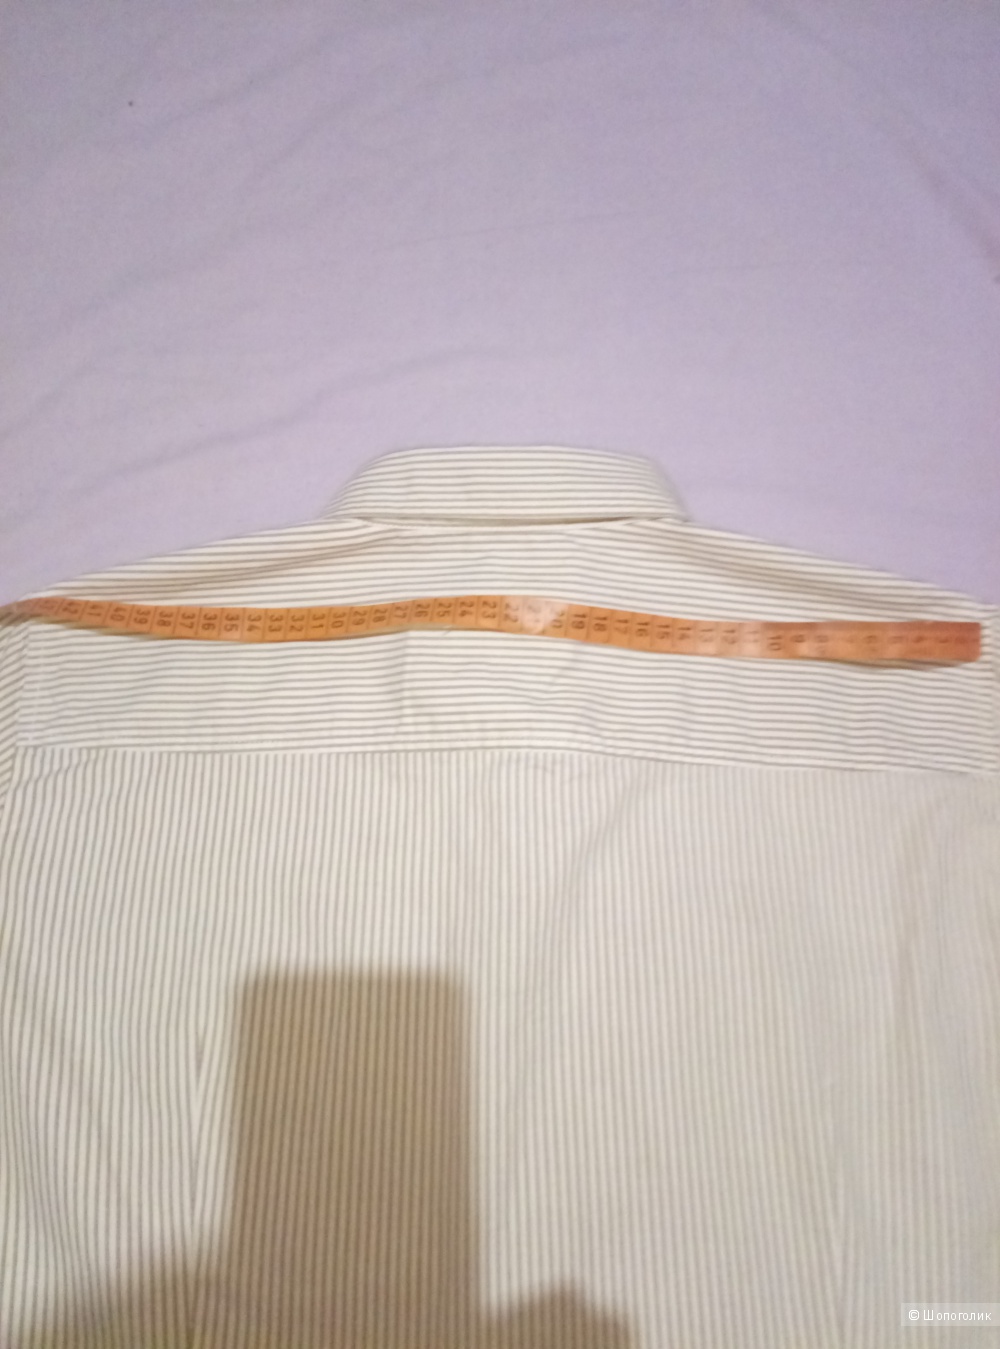 Рубашка Marc O’Polo, 42 размер.